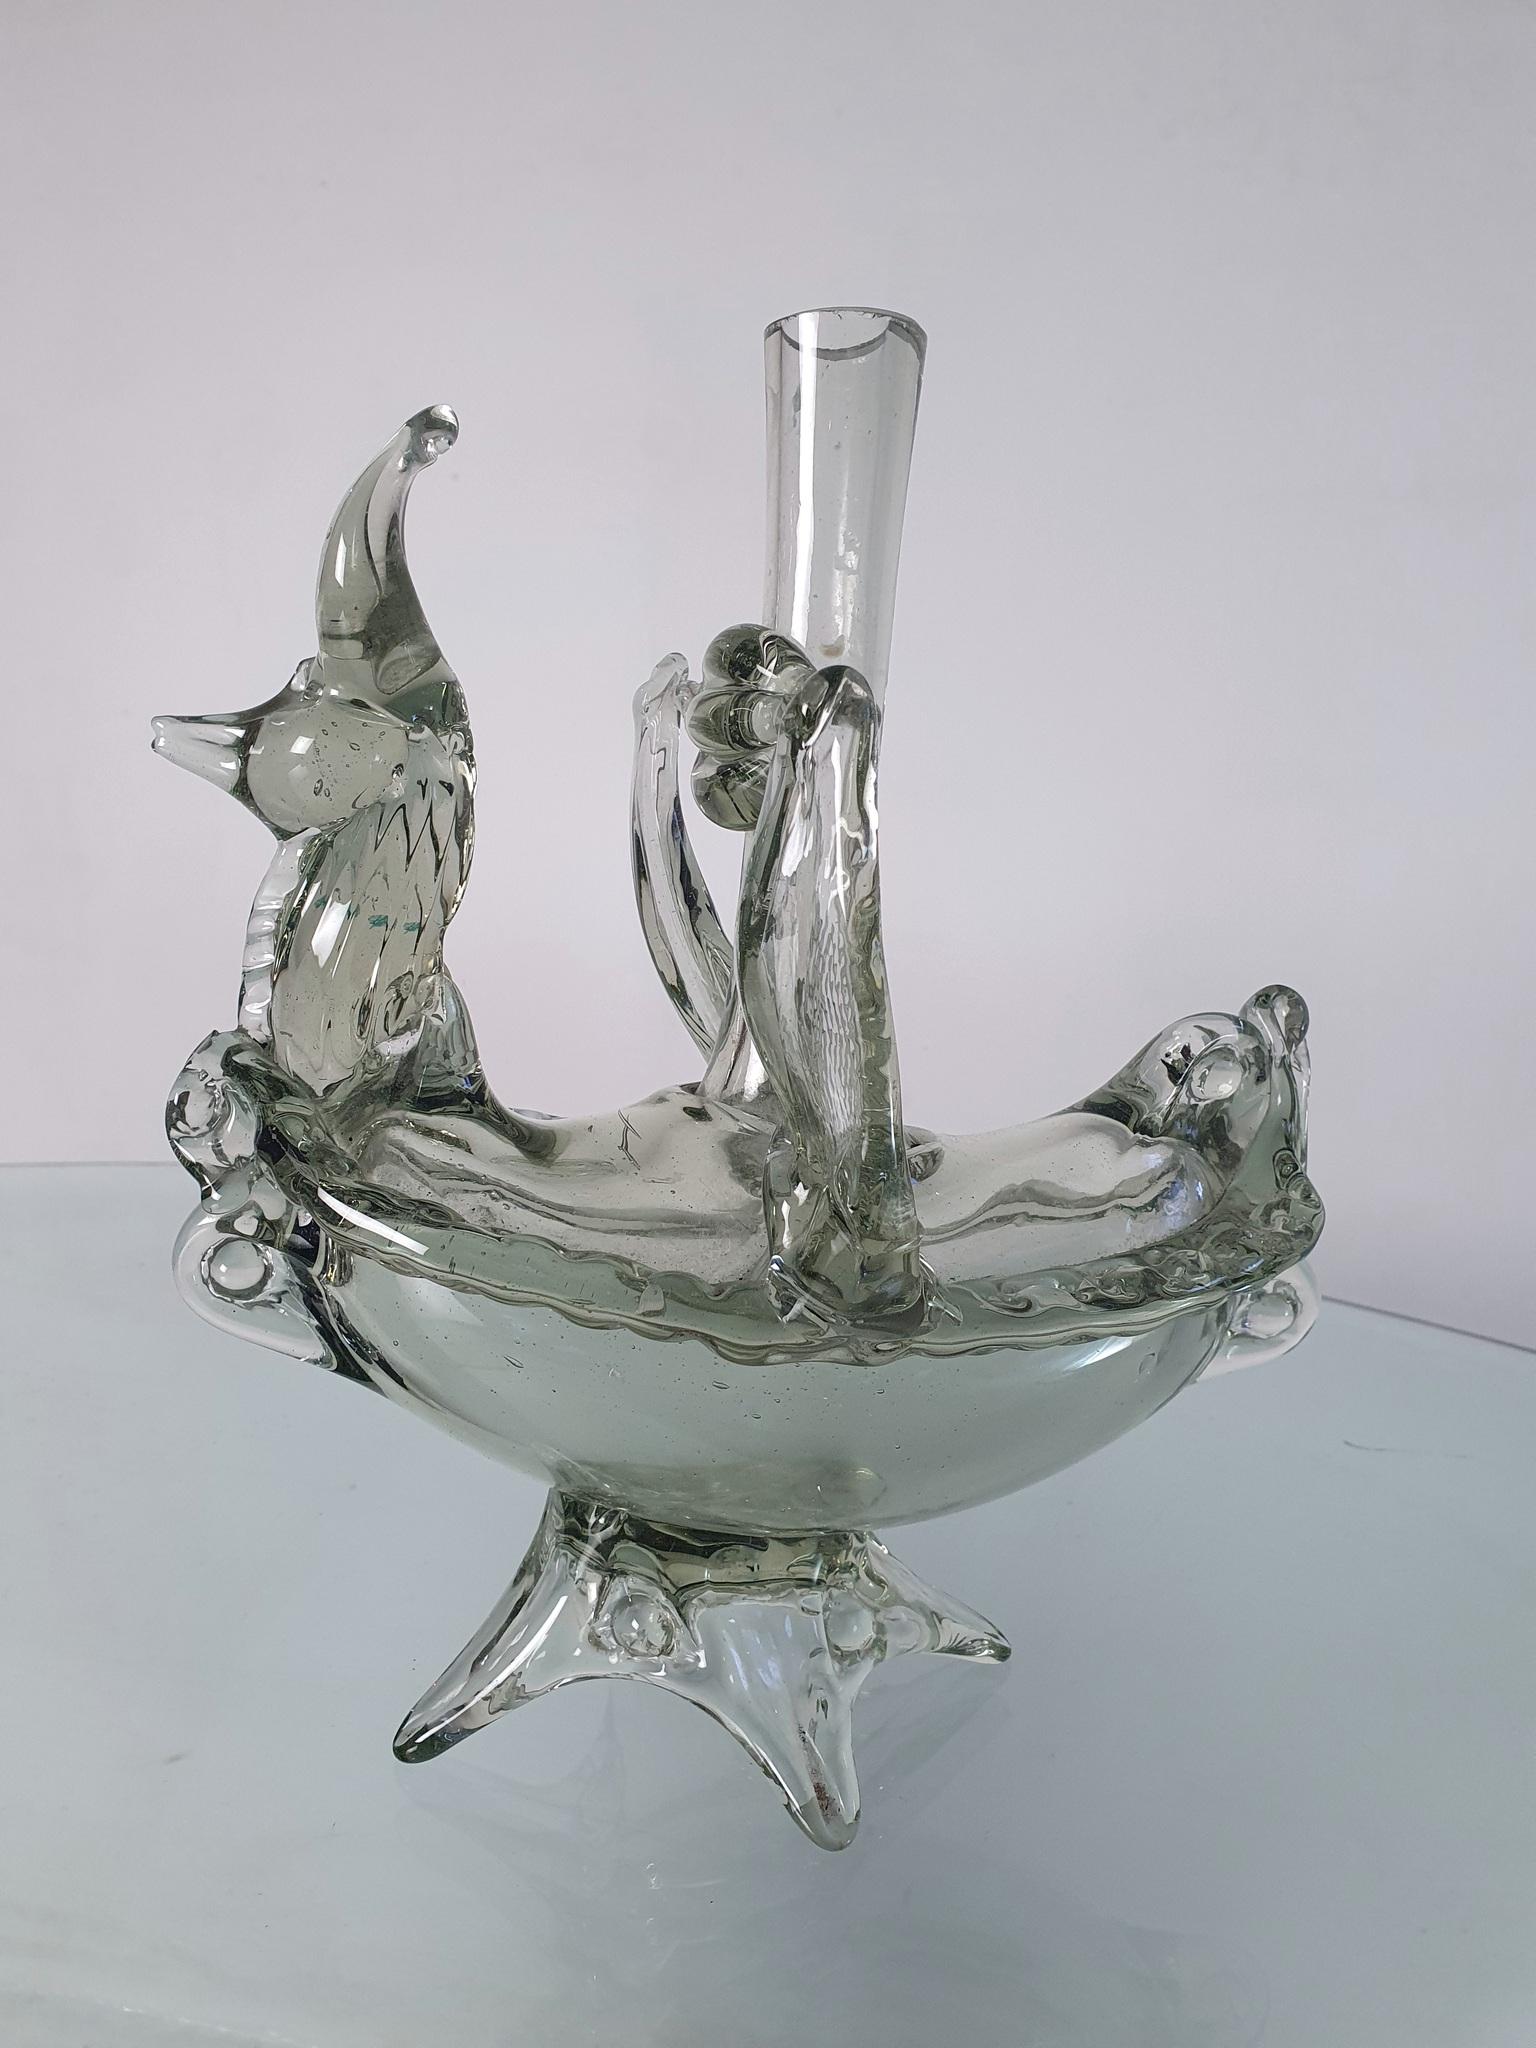 Ein einzigartiges Murano-Glasgefäß, das als Vase, Flasche oder Kerzenständer verwendet werden kann. Es hat die Form eines mystischen Fuchses auf der Vorderseite und gleichzeitig die Form eines Bootes. Produziert in Murano in den 1940er Jahren.